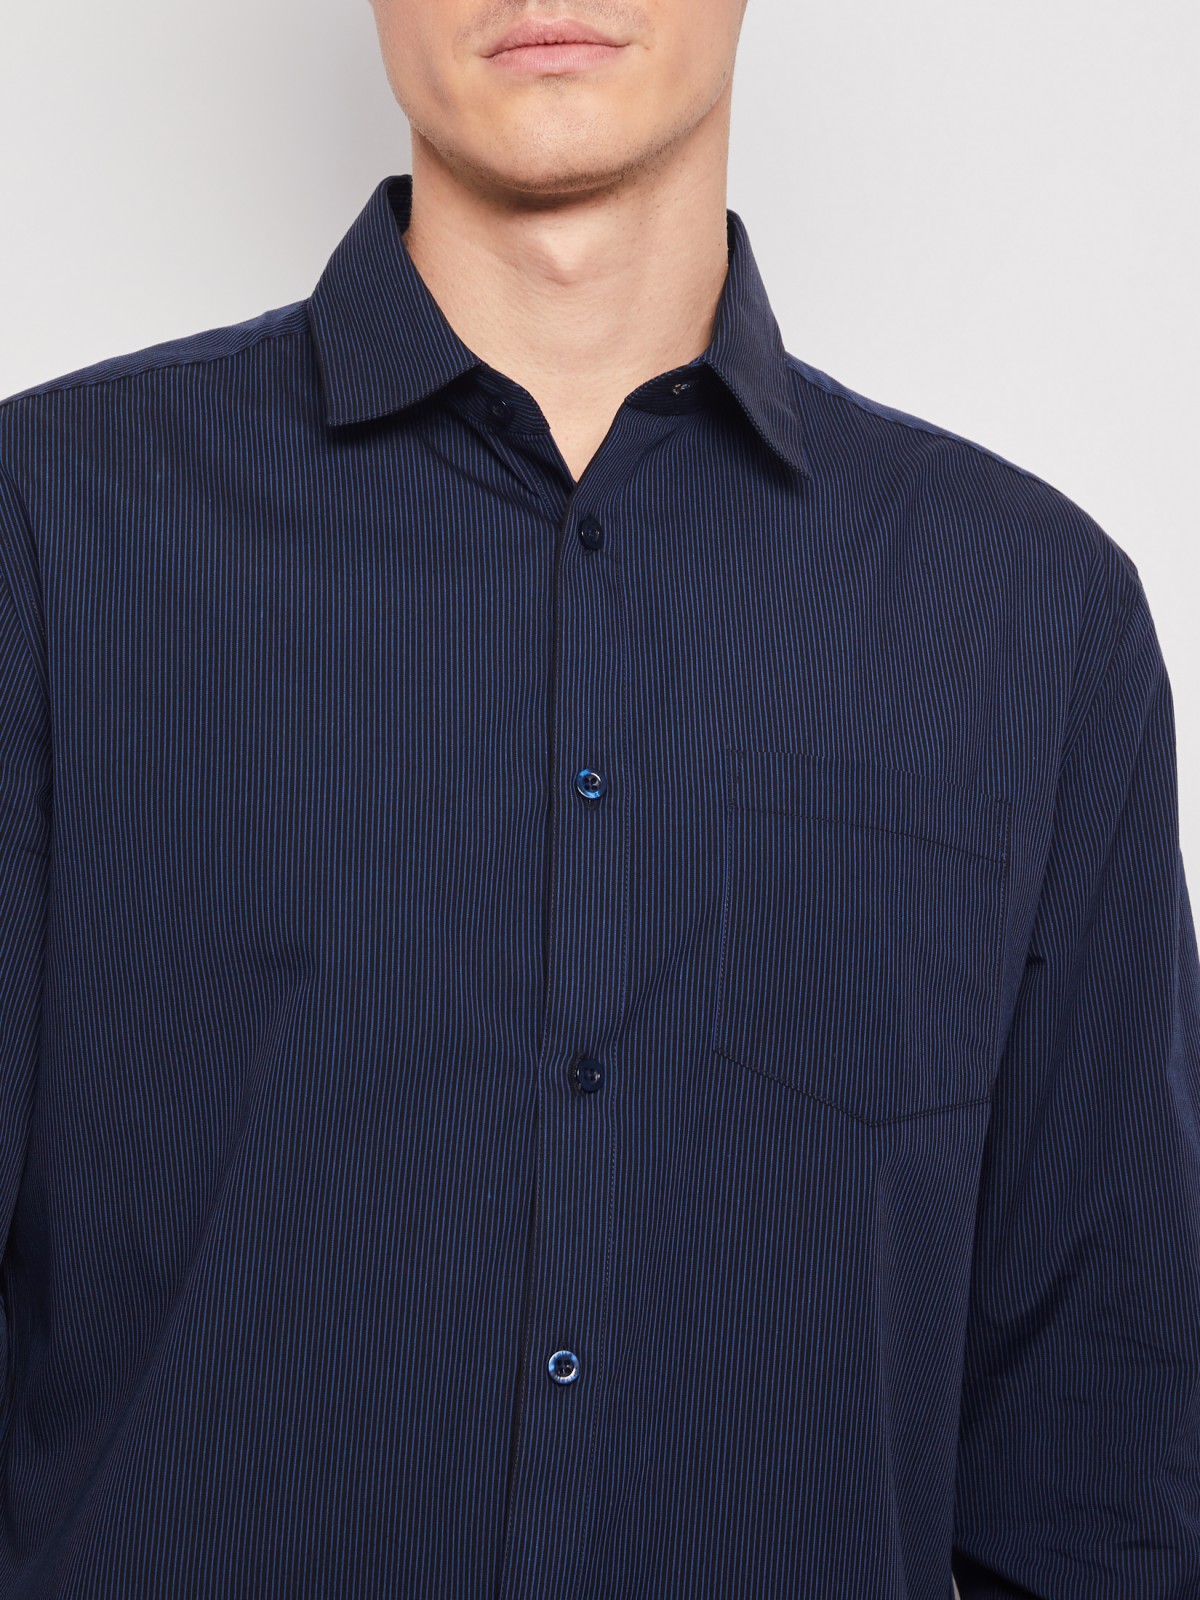 Рубашка в полоску с длинным рукавом zolla 012112159042, цвет темно-синий, размер M - фото 5